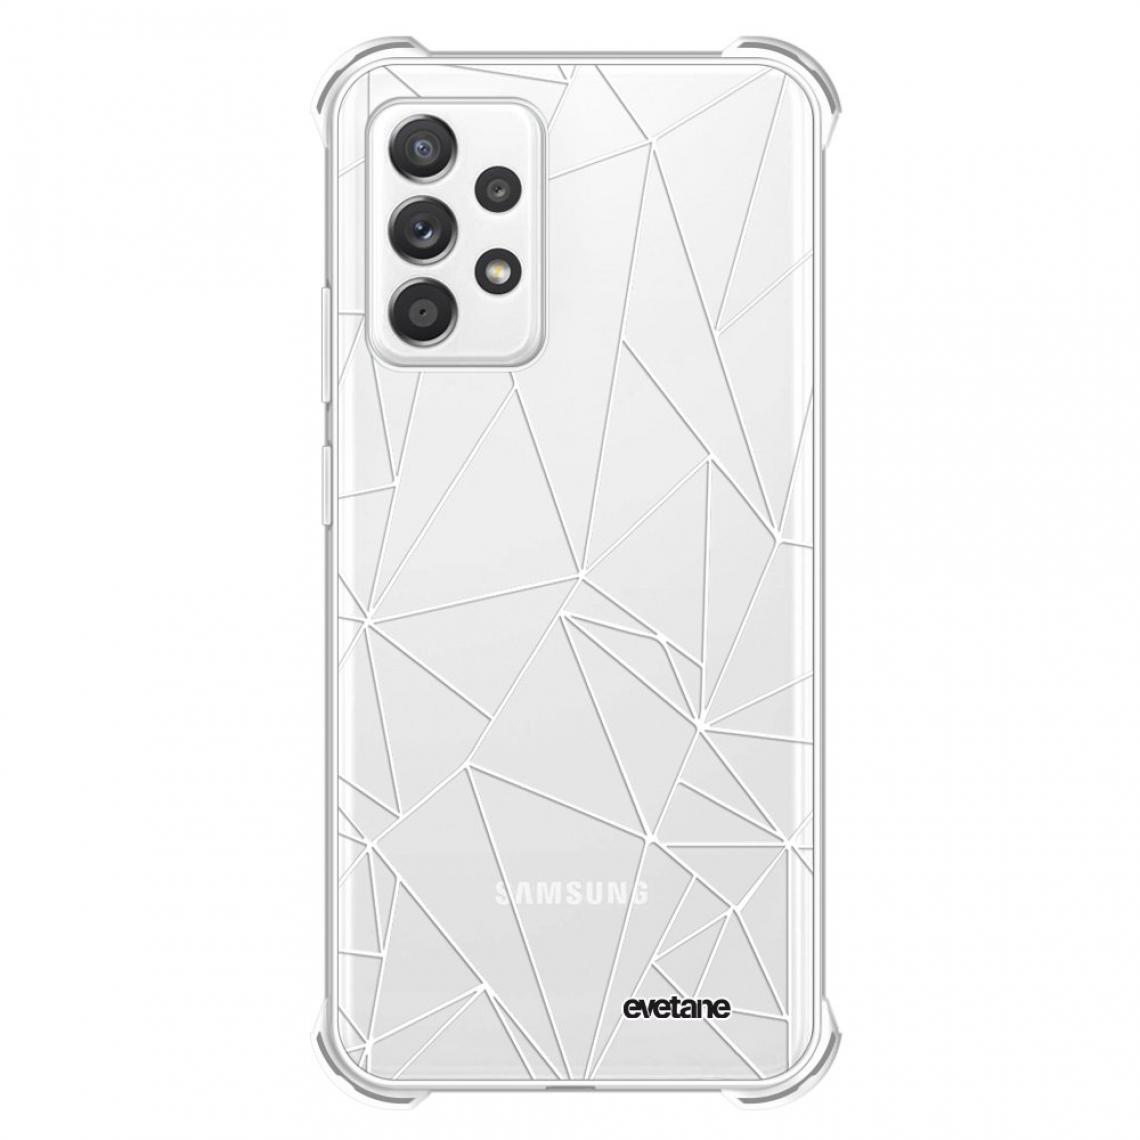 Evetane - Coque Samsung Galaxy A72 silicone anti-choc souple angles renforcés transparente - Coque, étui smartphone